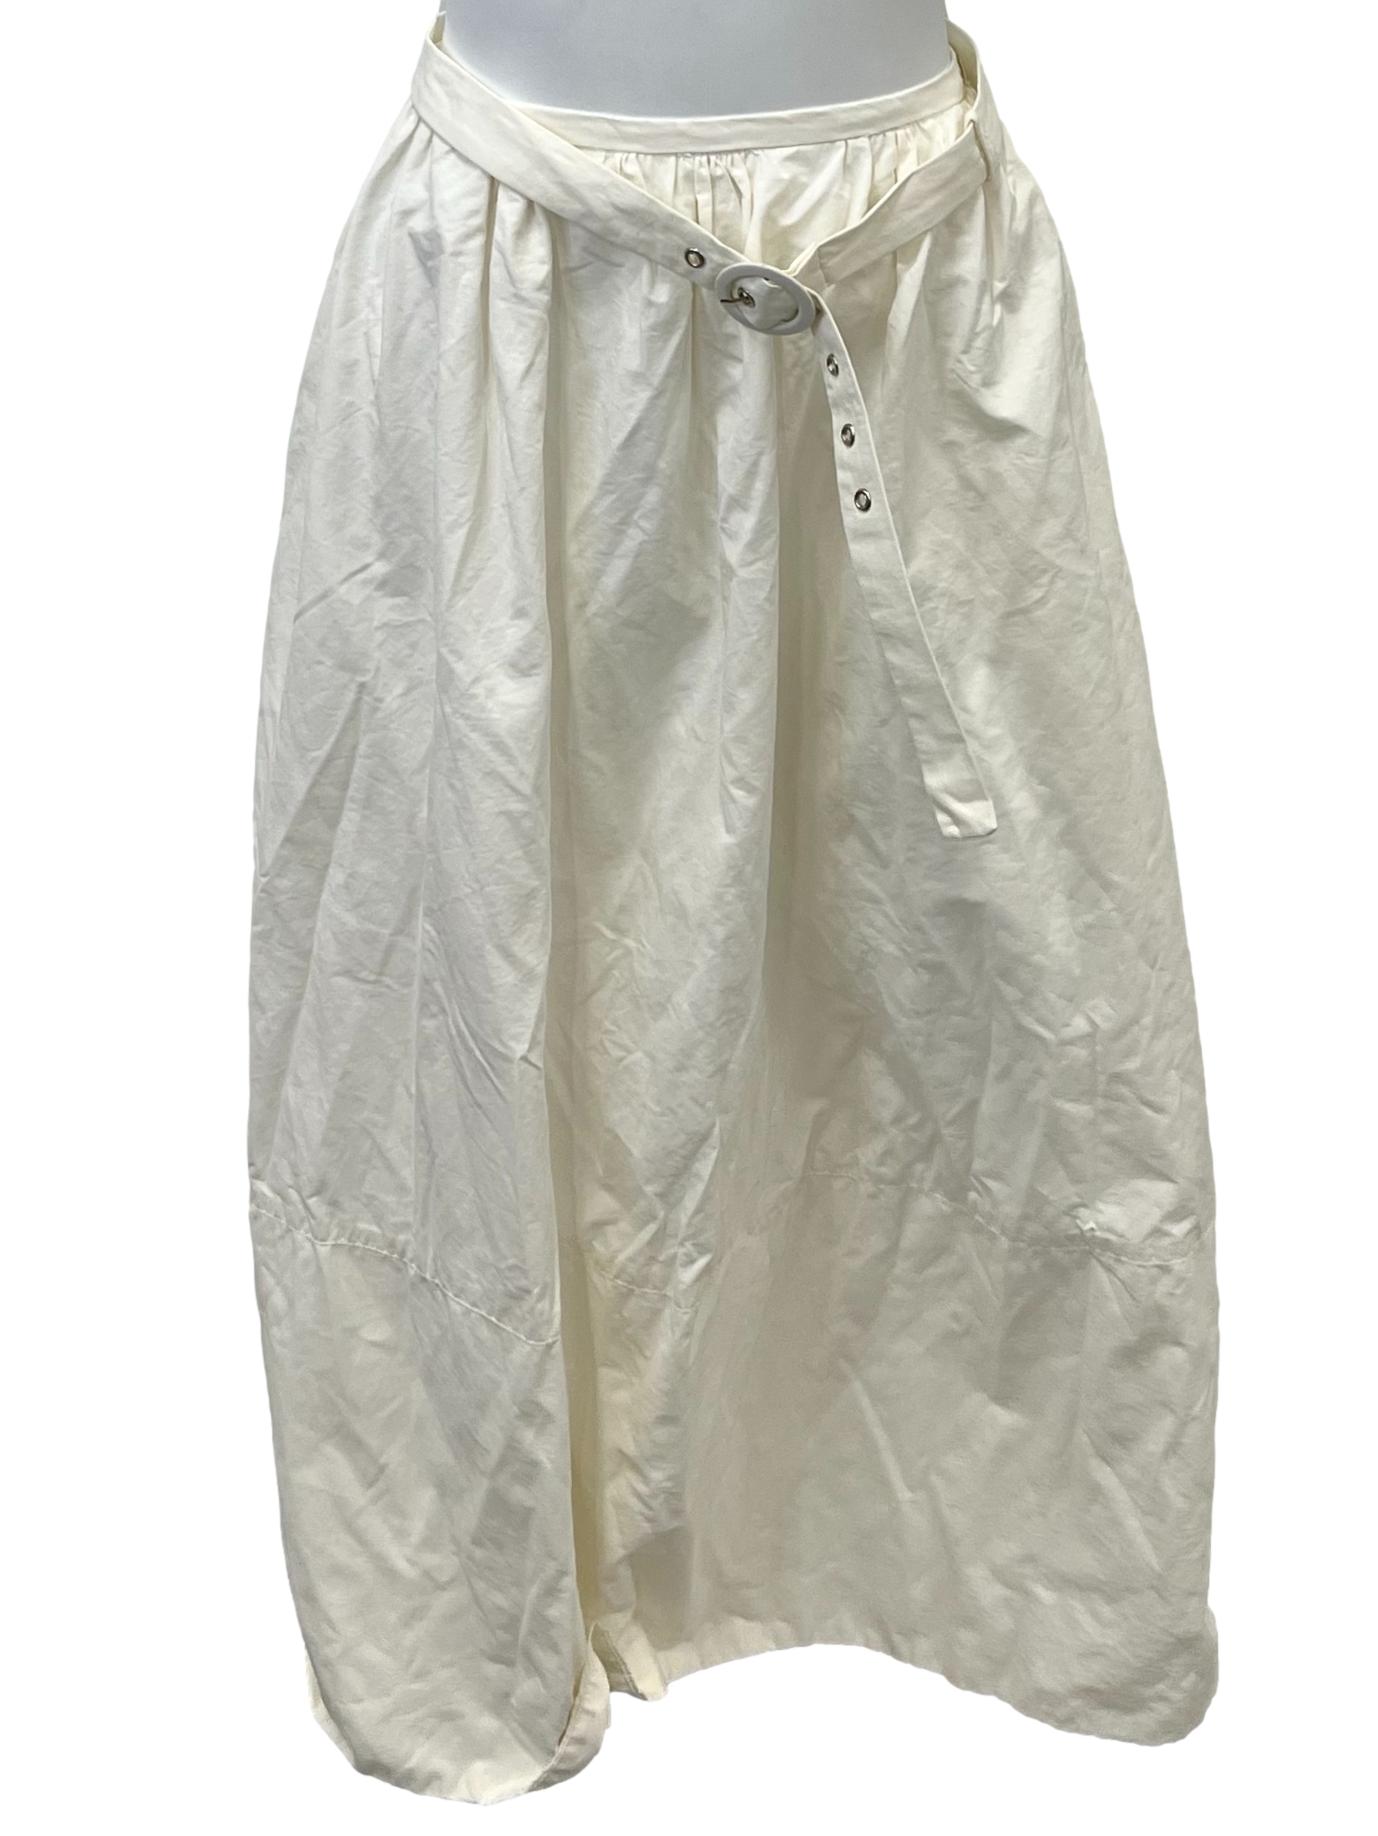 White A Line Midi Skirt